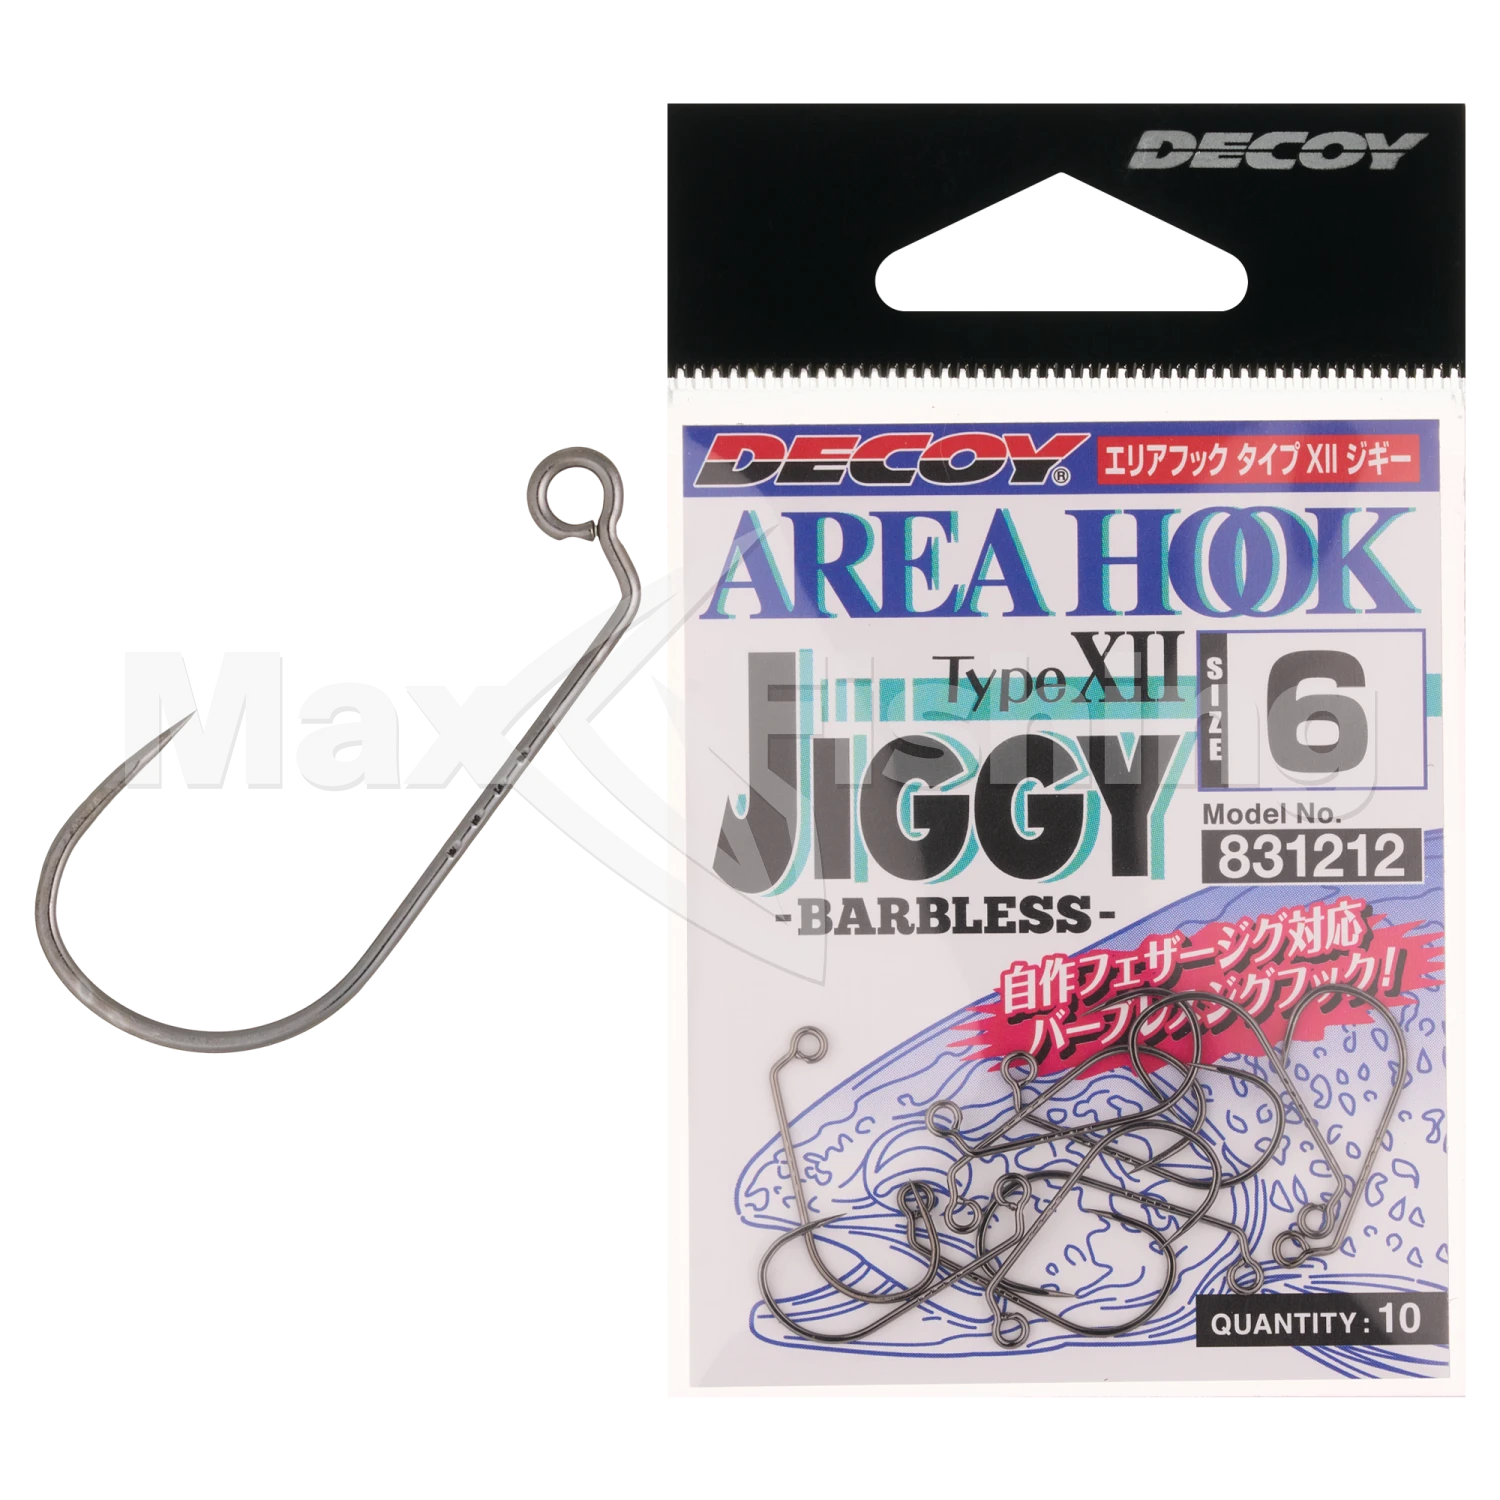 Крючок одинарный Decoy AH-12 Area Hook Jiggy #6 (10шт)